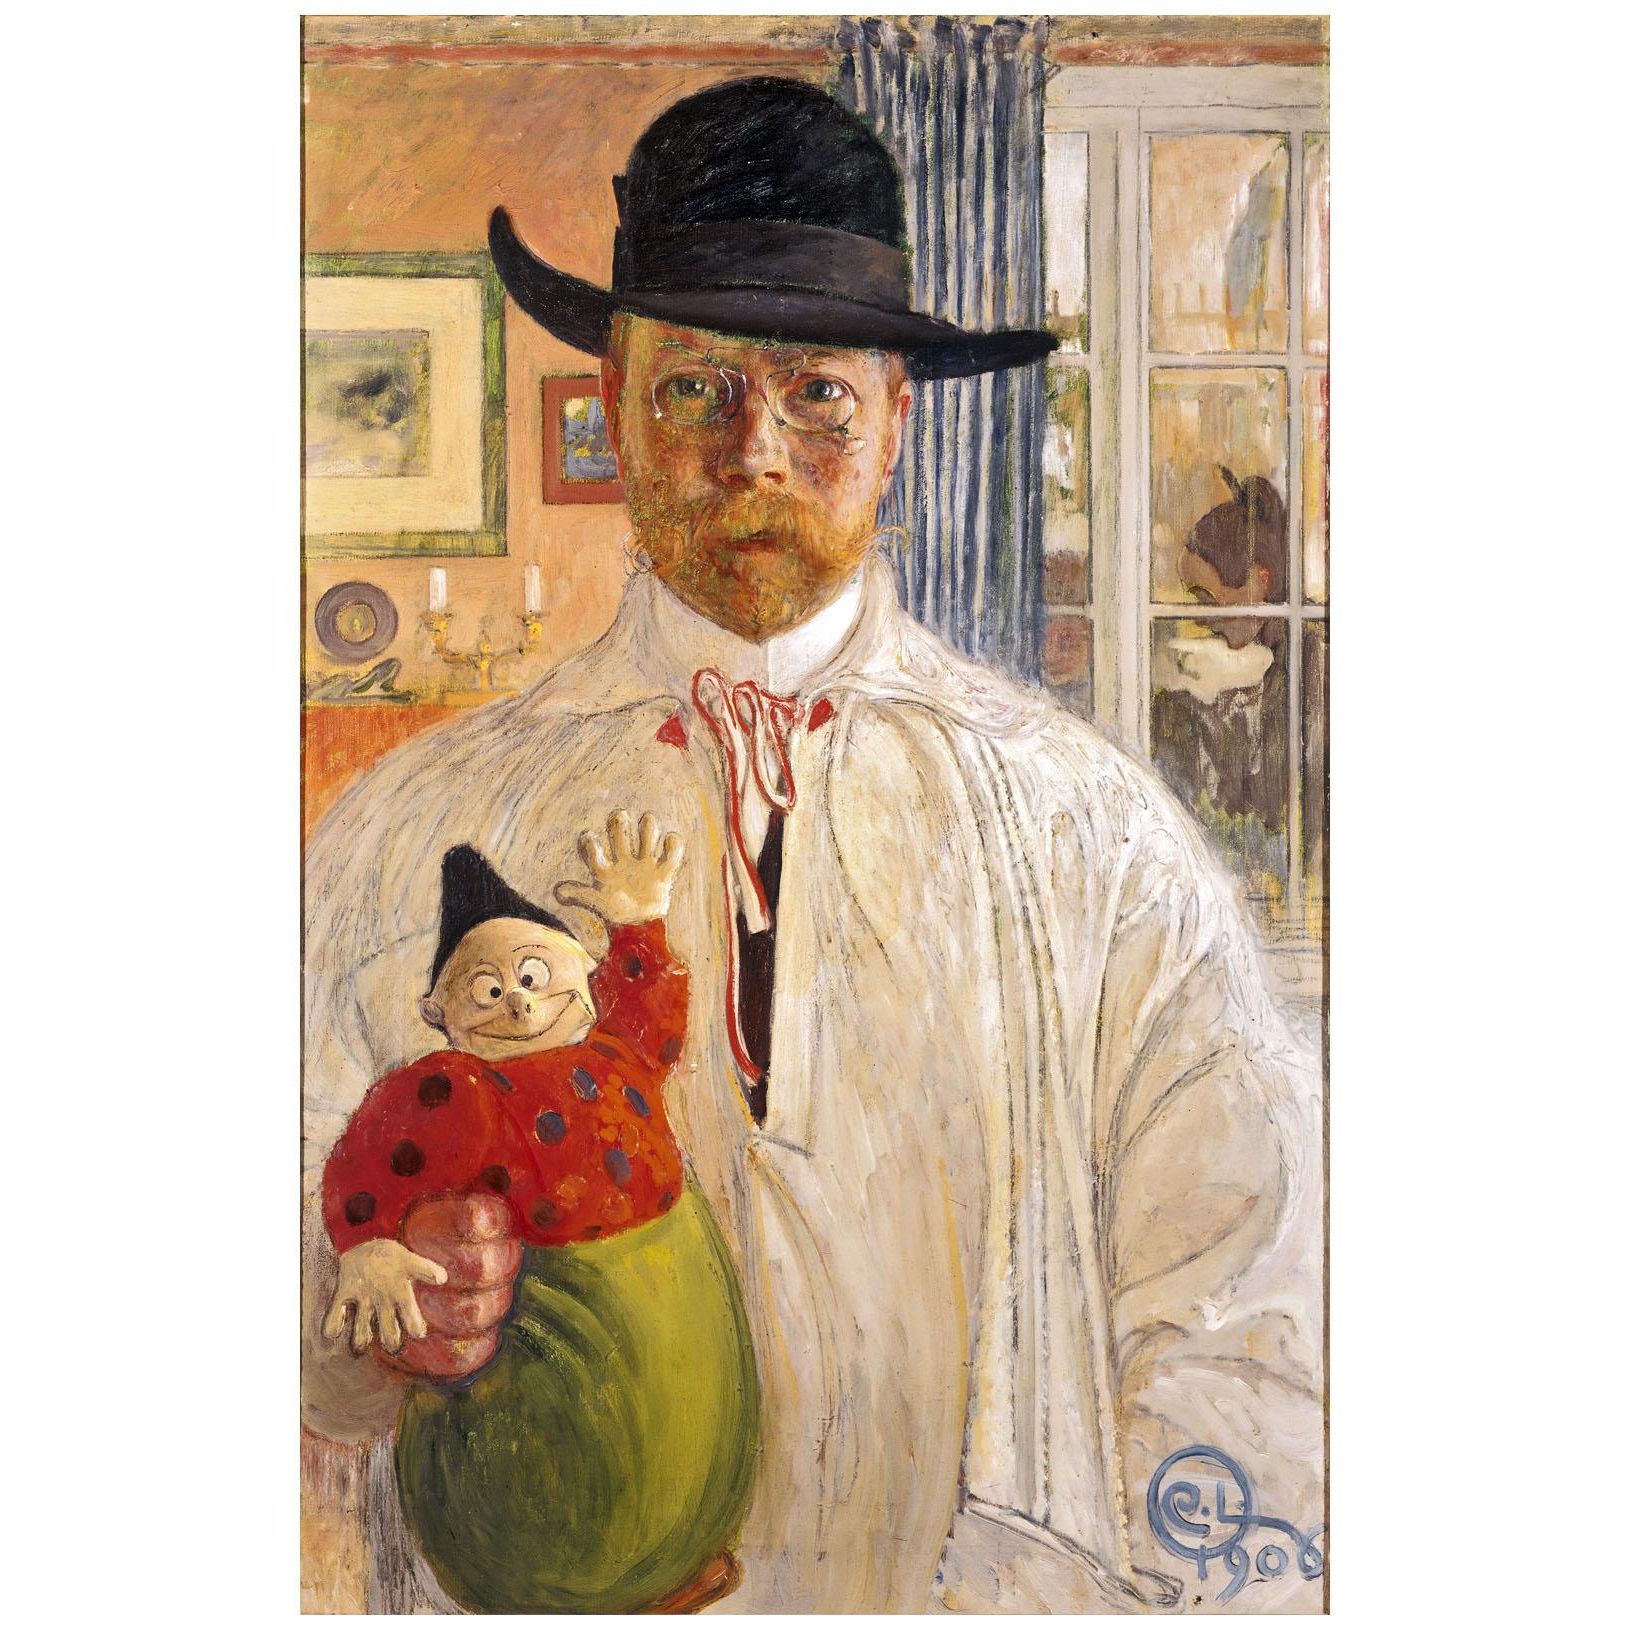 Carl Larsson. Self-Portrait. 1906. Galleria degli Uffizi